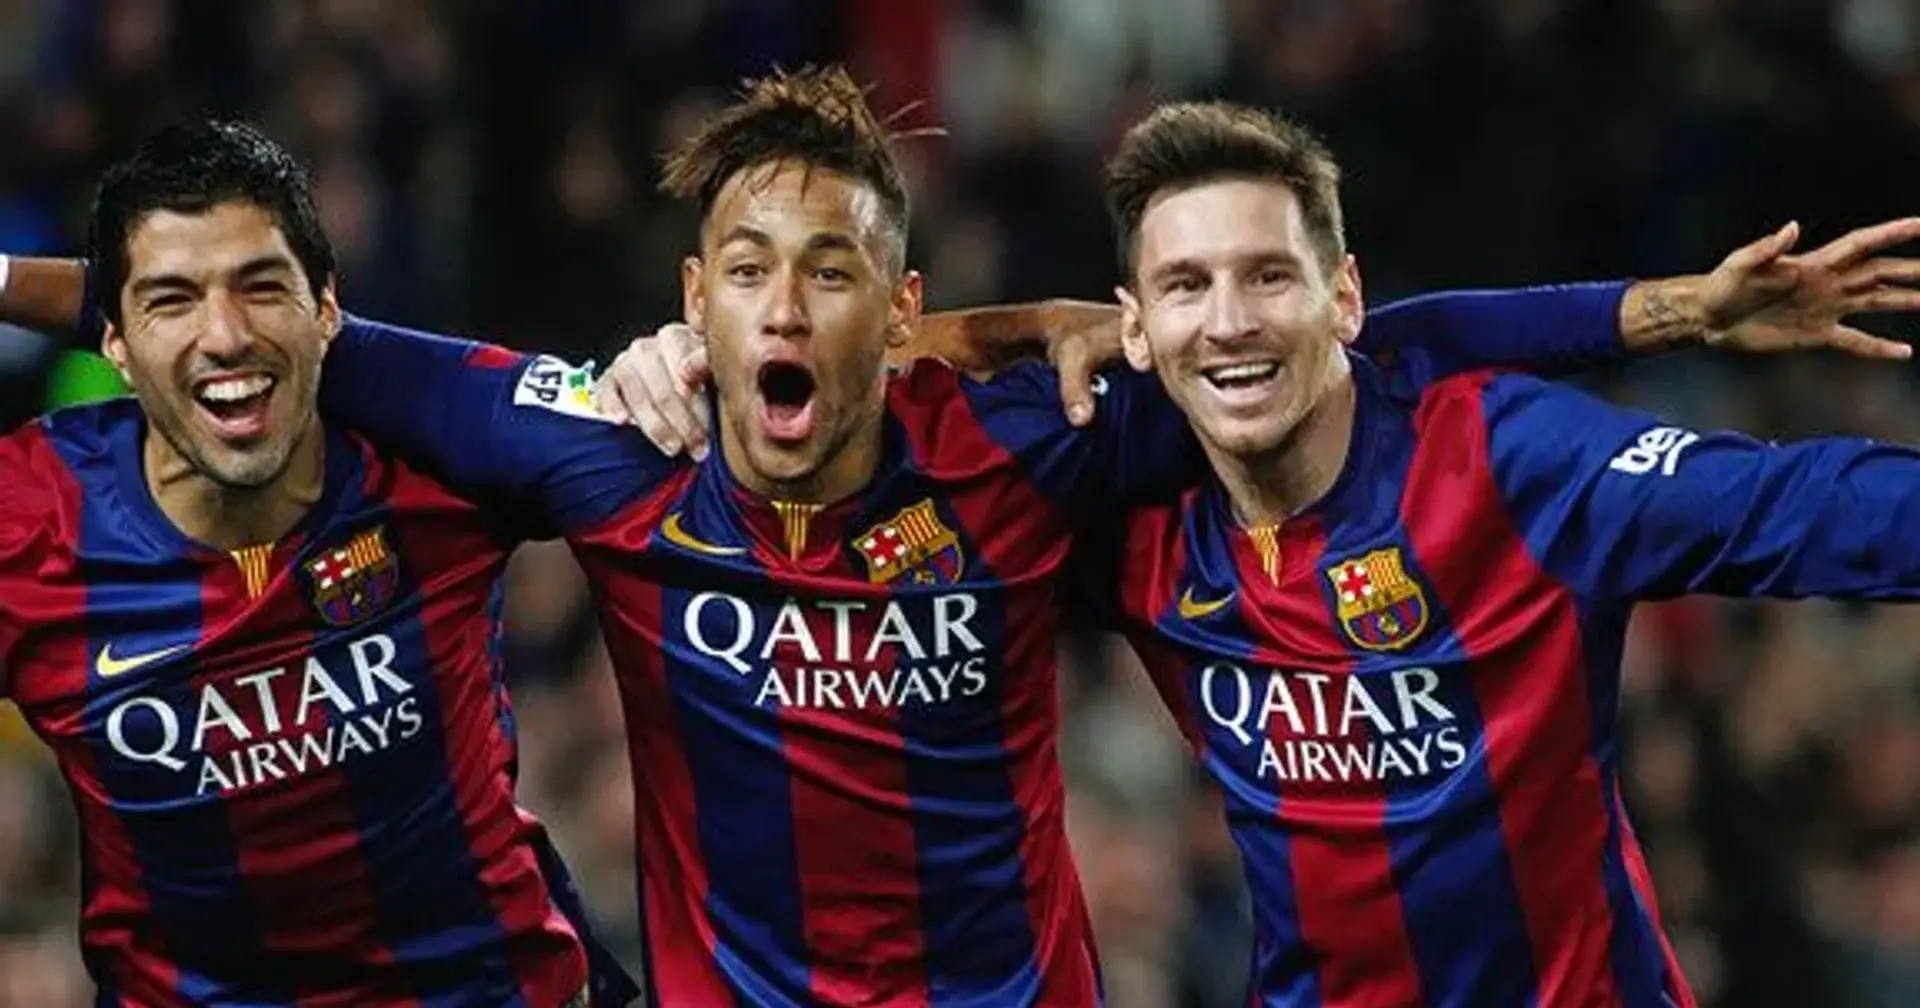 Explicado: cómo el Barcelona ha gastado 500M € tratando de reemplazar a Messi, Suárez y Neymar